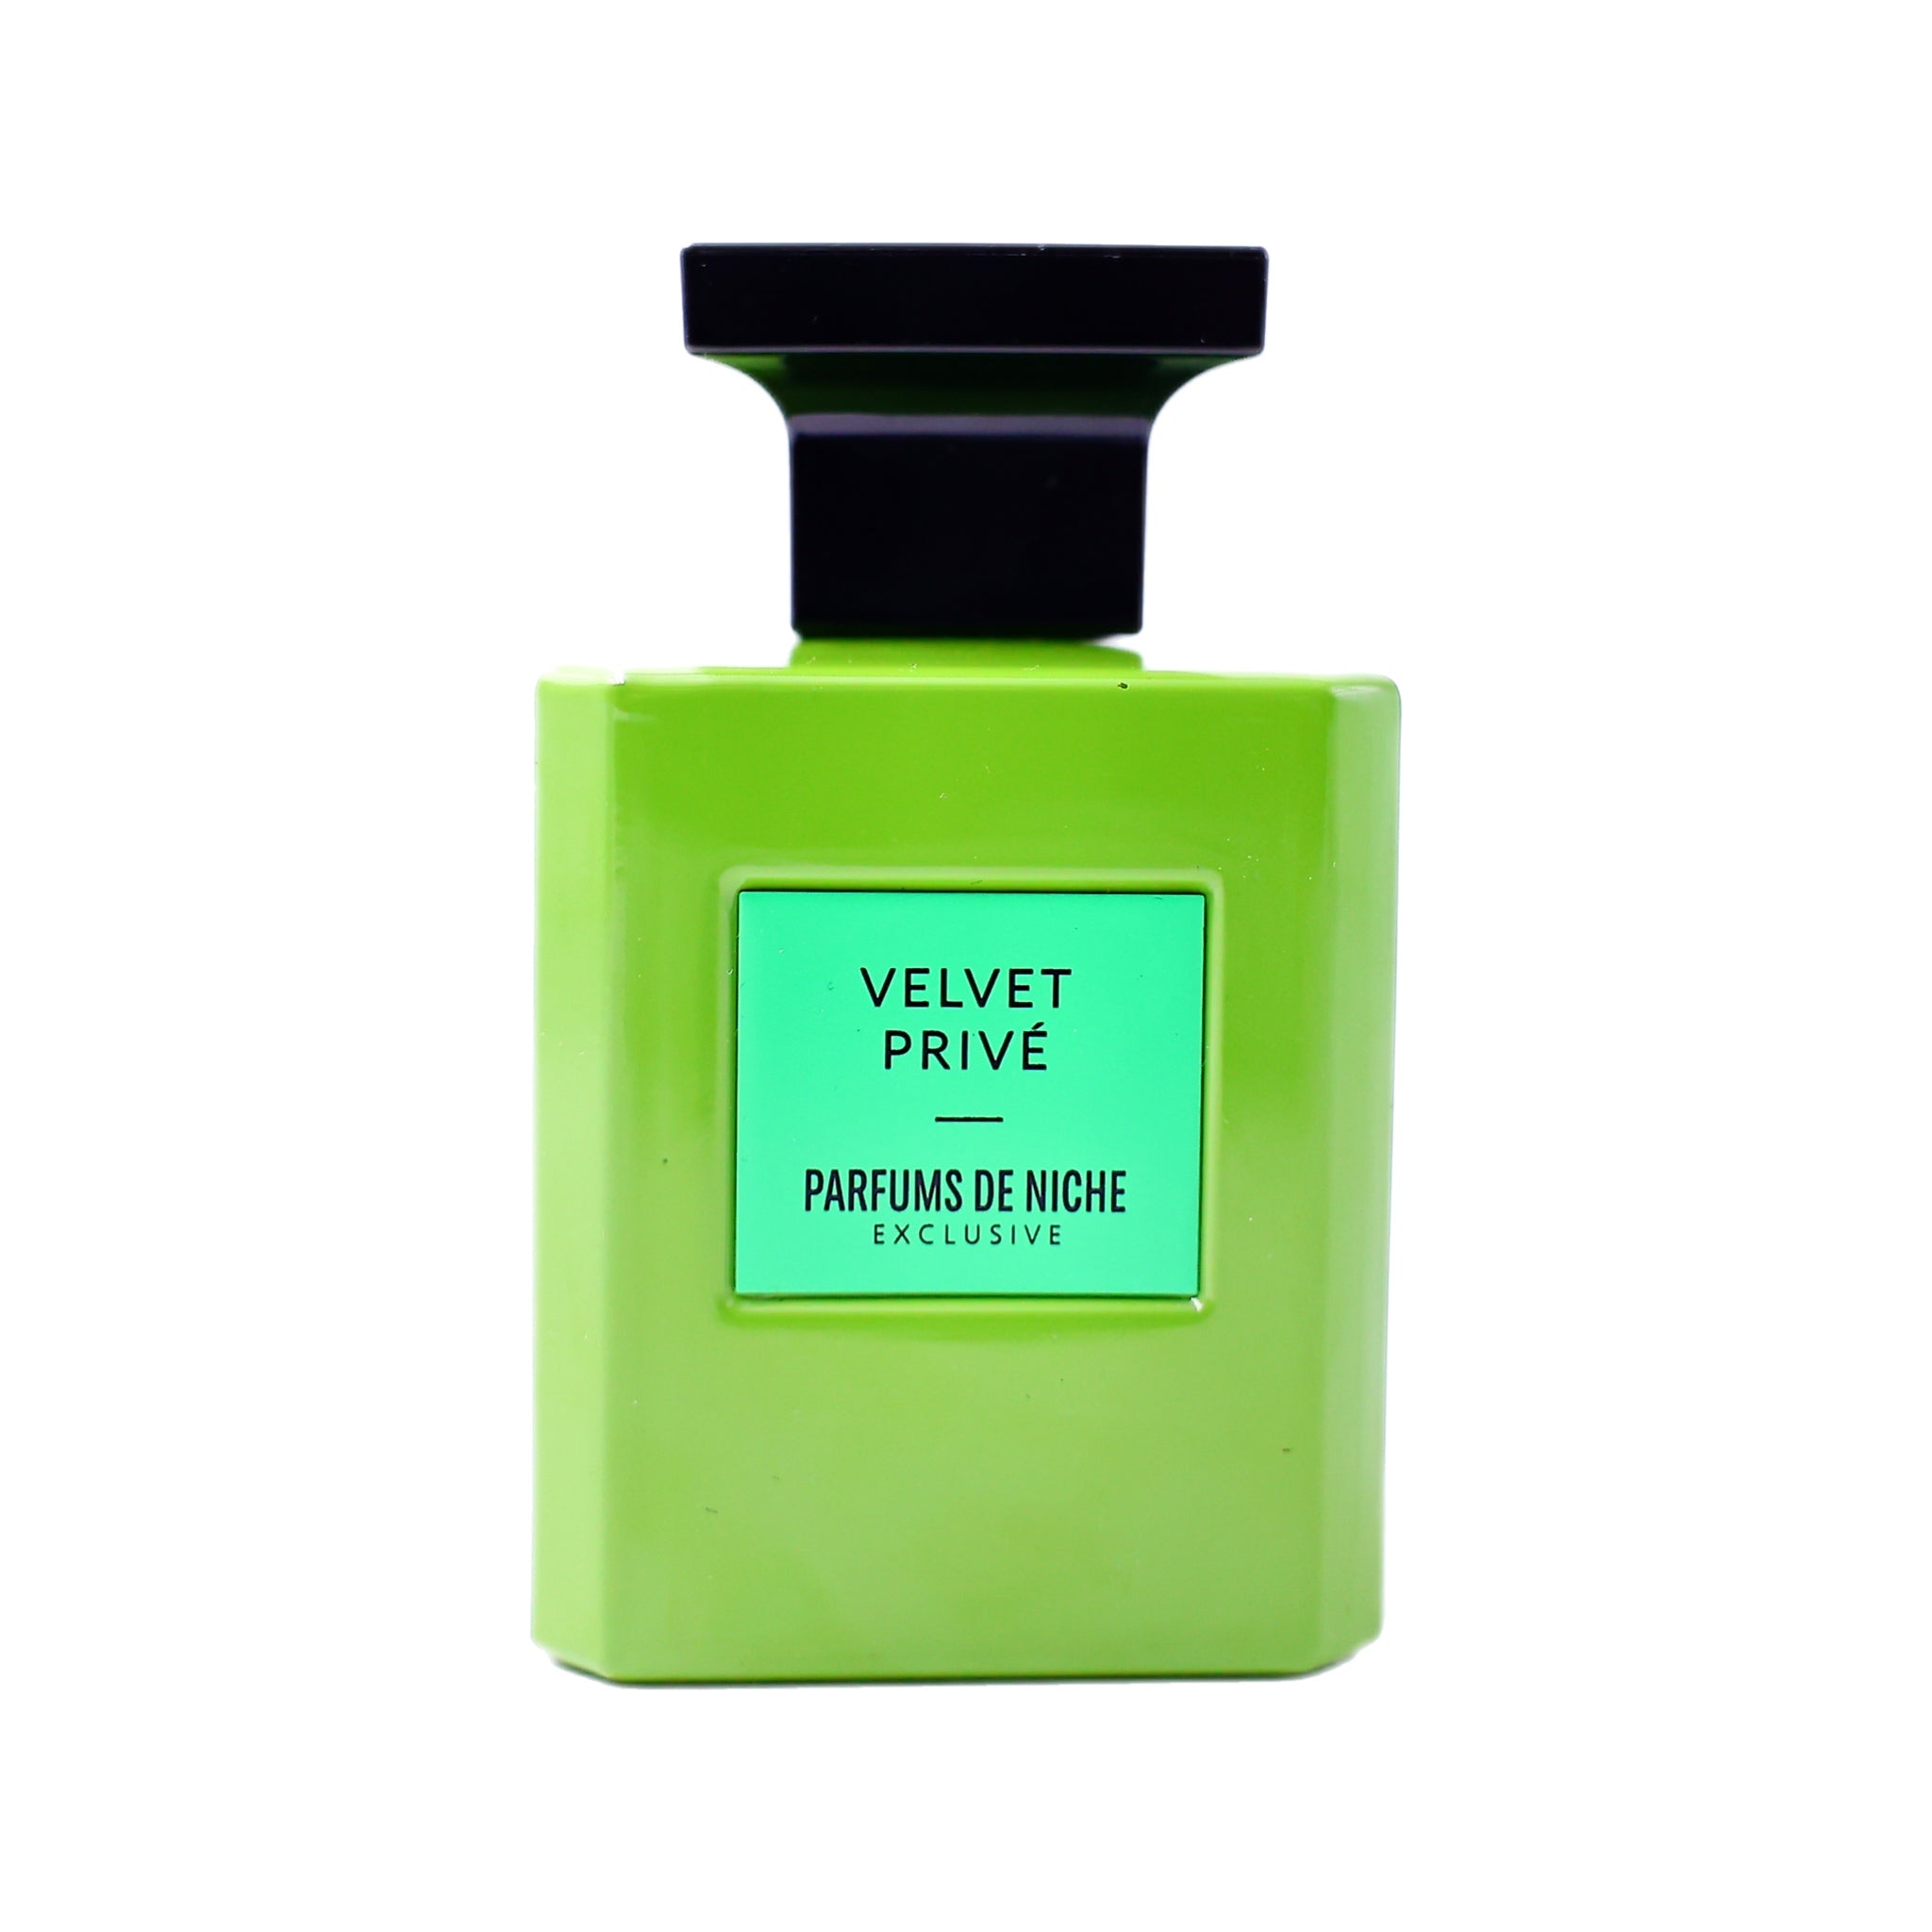 Velvet Privée - Parfums de Niche Paris 100 ml